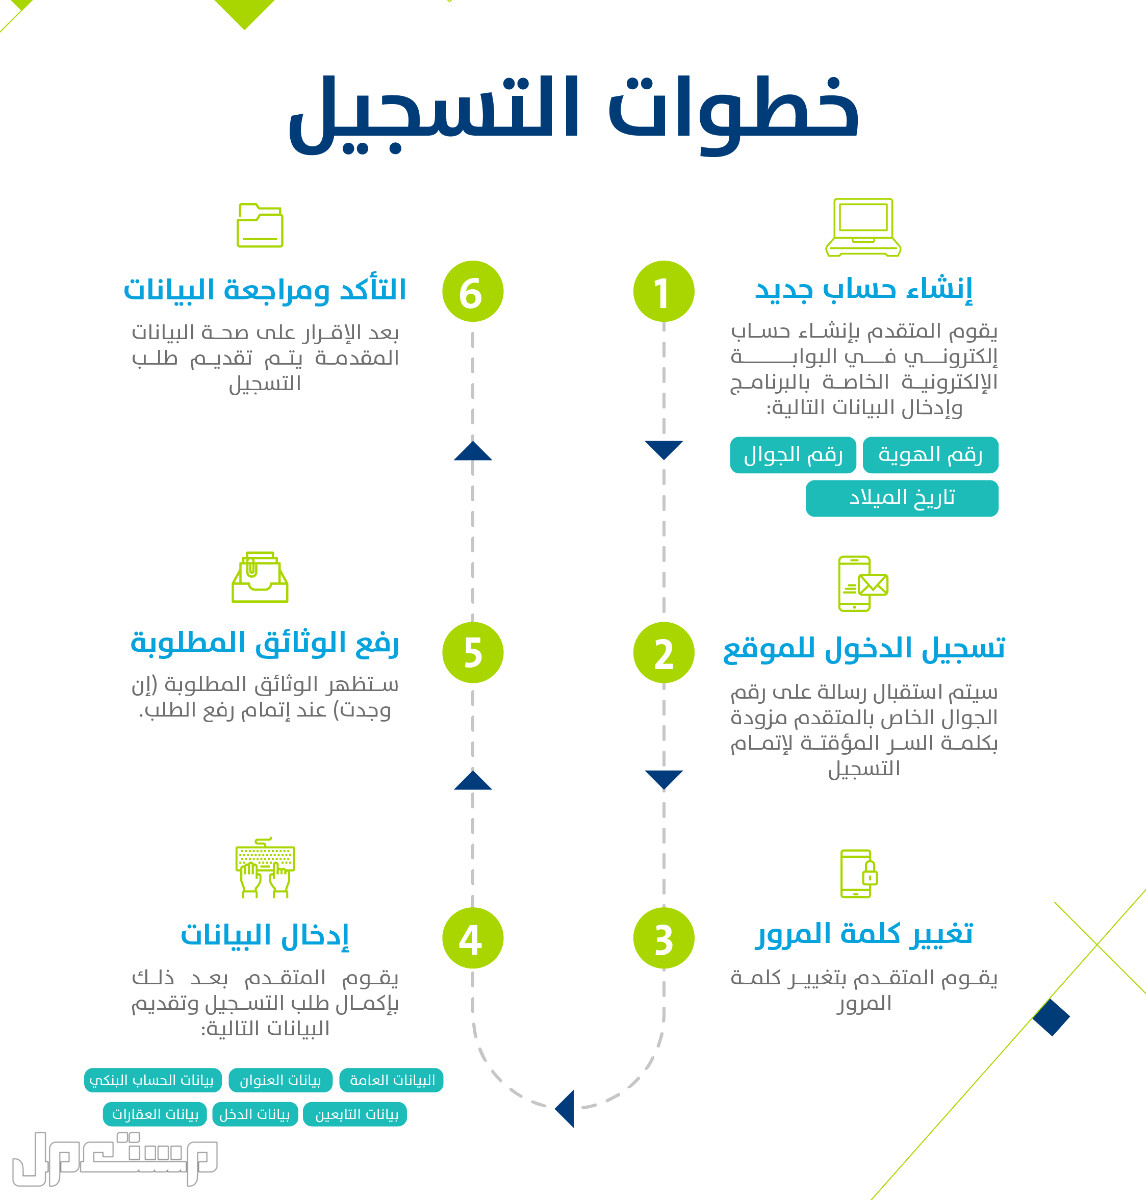 تعرف على كيفية التسجيل في حساب المواطن عقب تمديد الدعم الإضافي 1444 بالخطوات في الأردن خطوات التسجيل